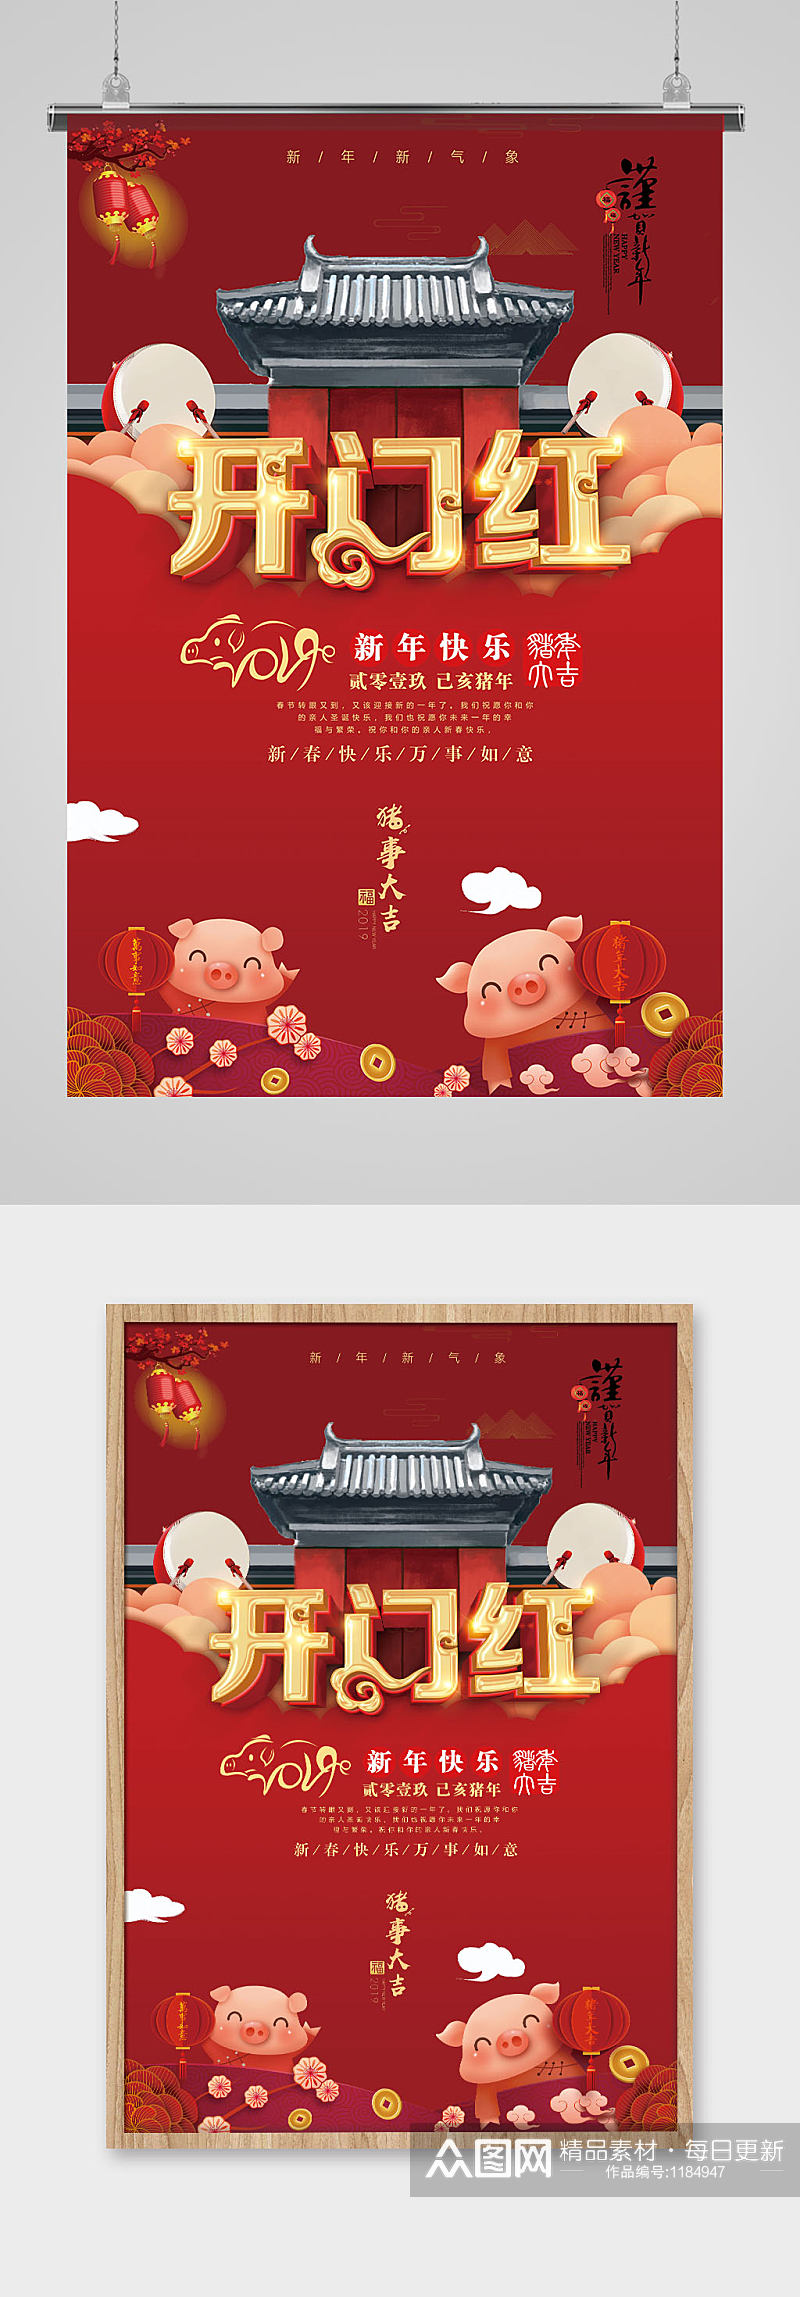 红色创意中国气氛新年过节开门红海报素材